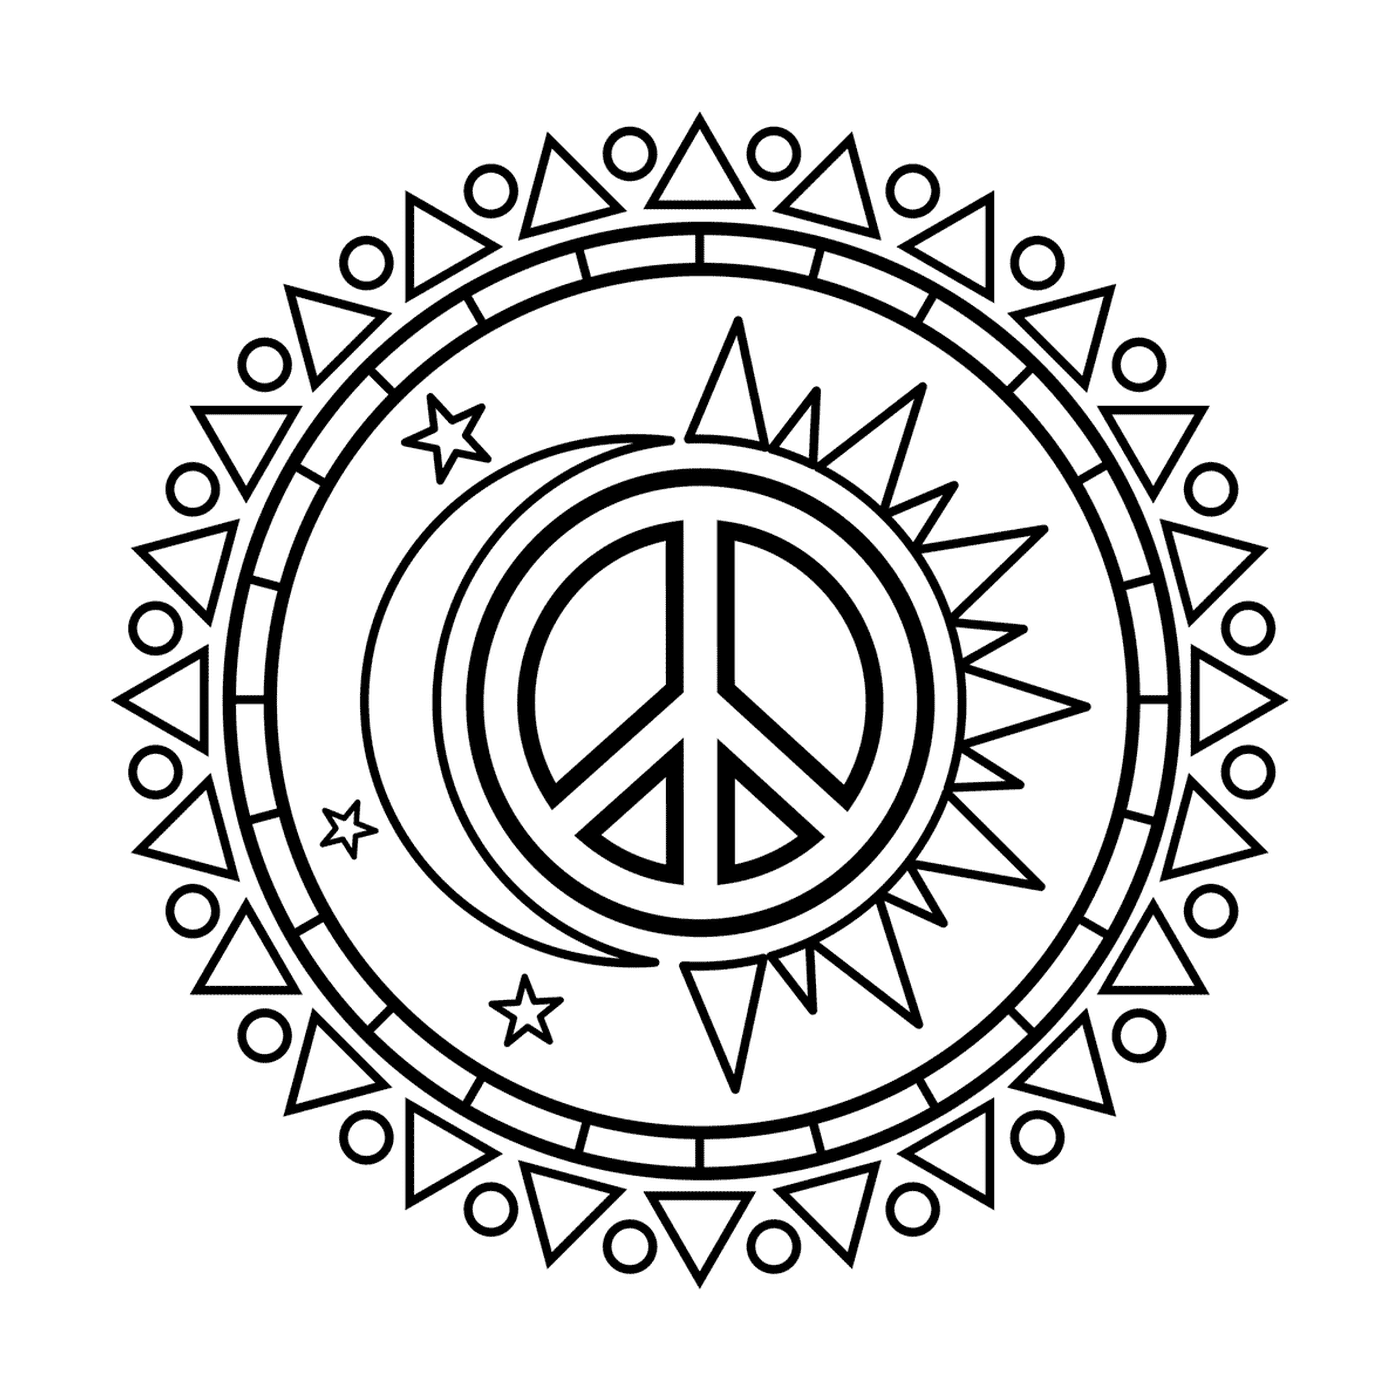  Sonne und Mond mit Symbol des Friedens 